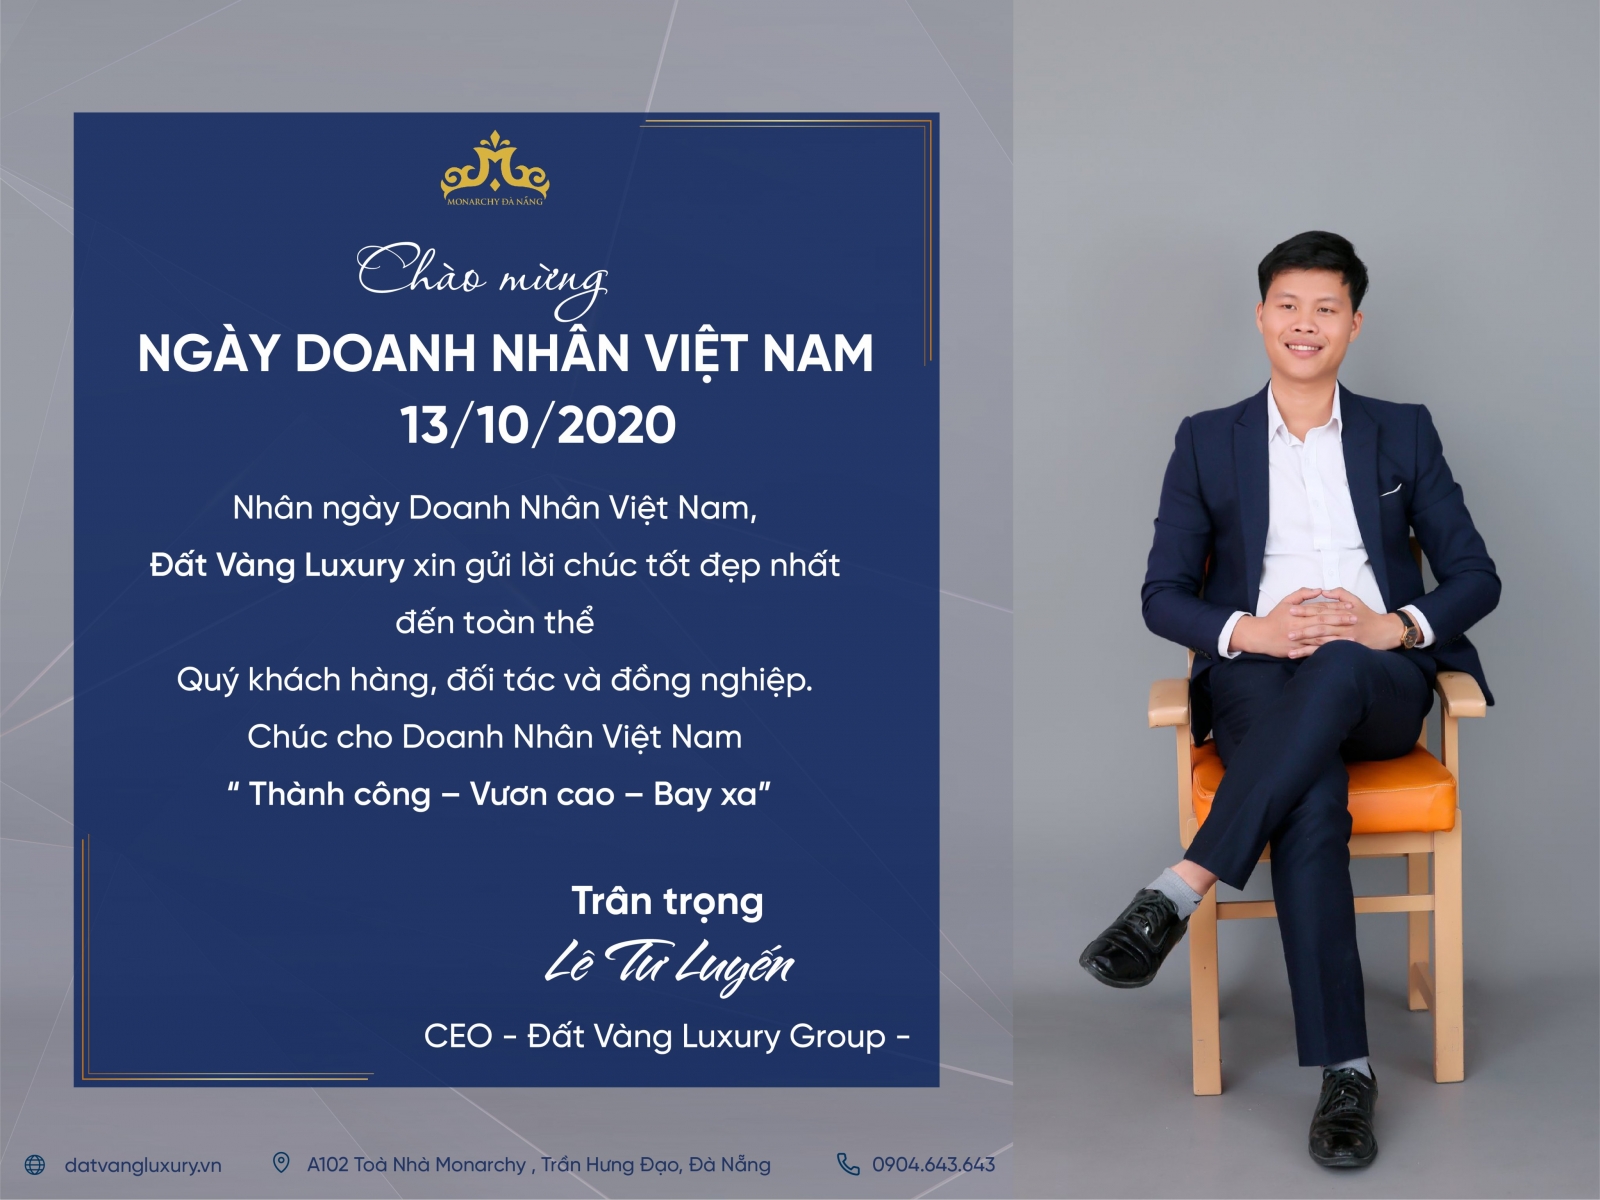 CEO Đất Vàng Luxury - nhà phân phối dự án Monarchy - gửi lời chúc nhân ngày Doanh nhân Việt Nam